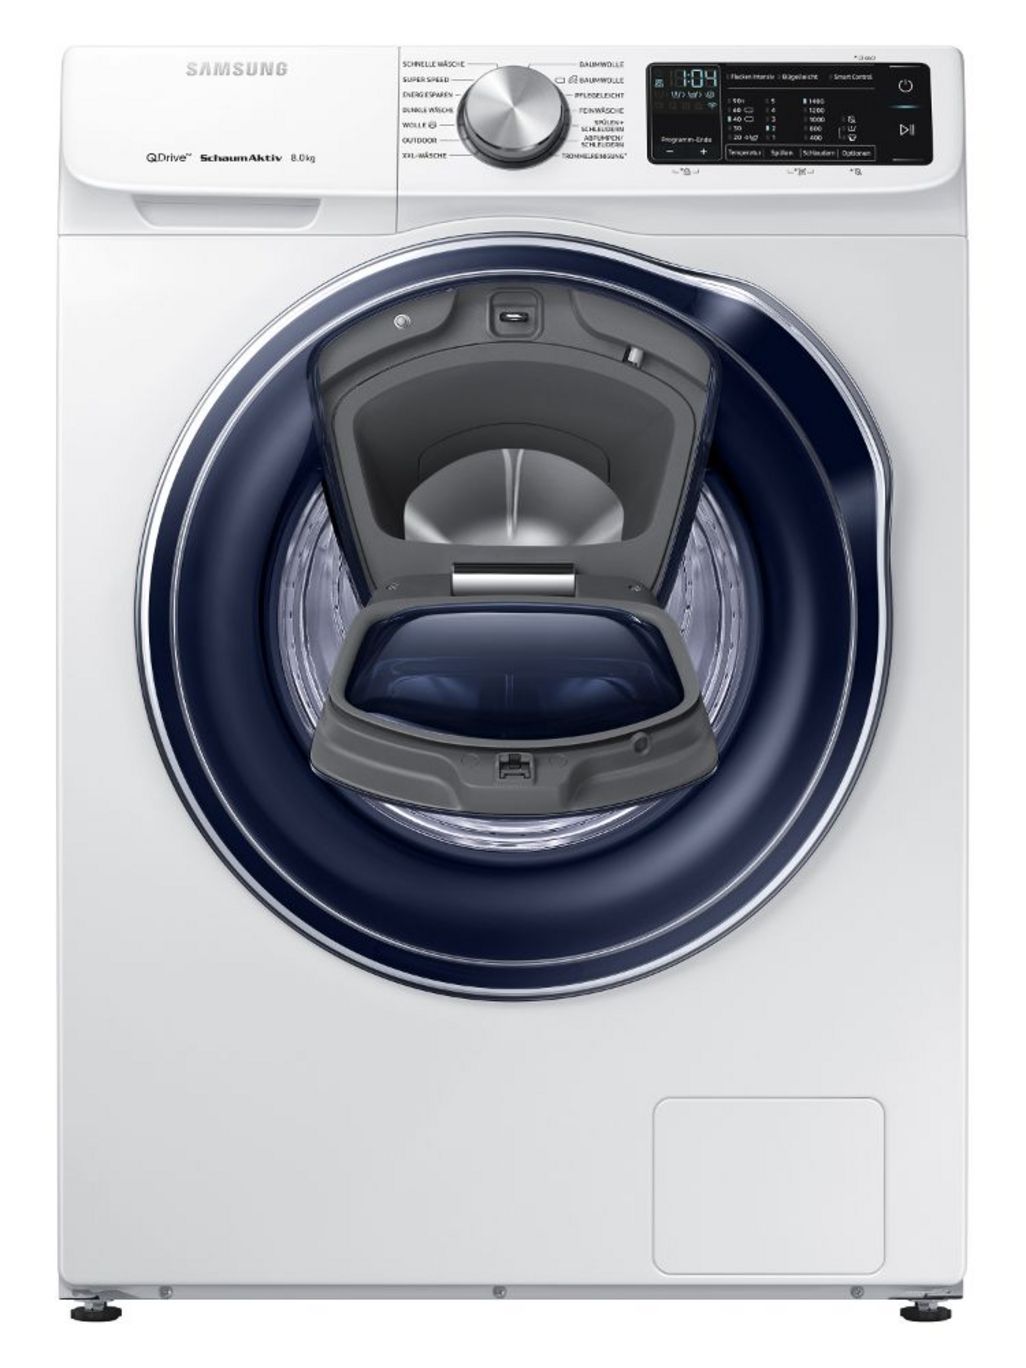 Features wie Samsung QuickDrive, AddWash für nachträgliches Zugeben von Kleidungsstücken und Dampfprogrammen, die Allergene und Bakterien entfernen, sind die Highlights moderner Wäschepflege.